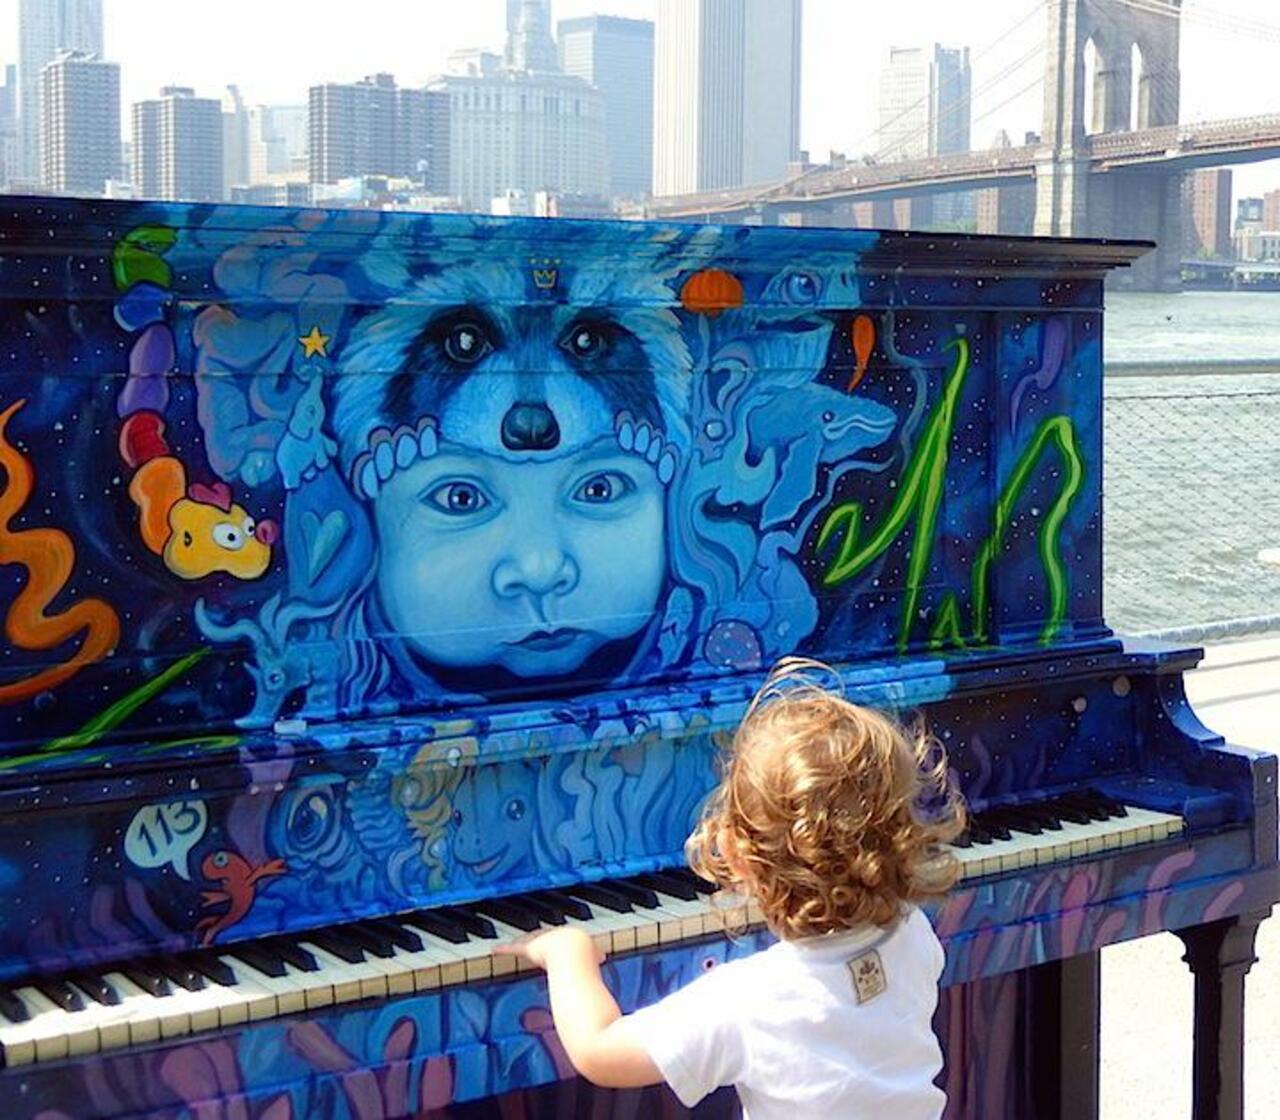 StreetArt News
Marc Evan for Sing for Hope in #NewYork #USA 
#StreetArt #Art #UrbanArt #Graffiti http://t.co/oxBFdSIPUm